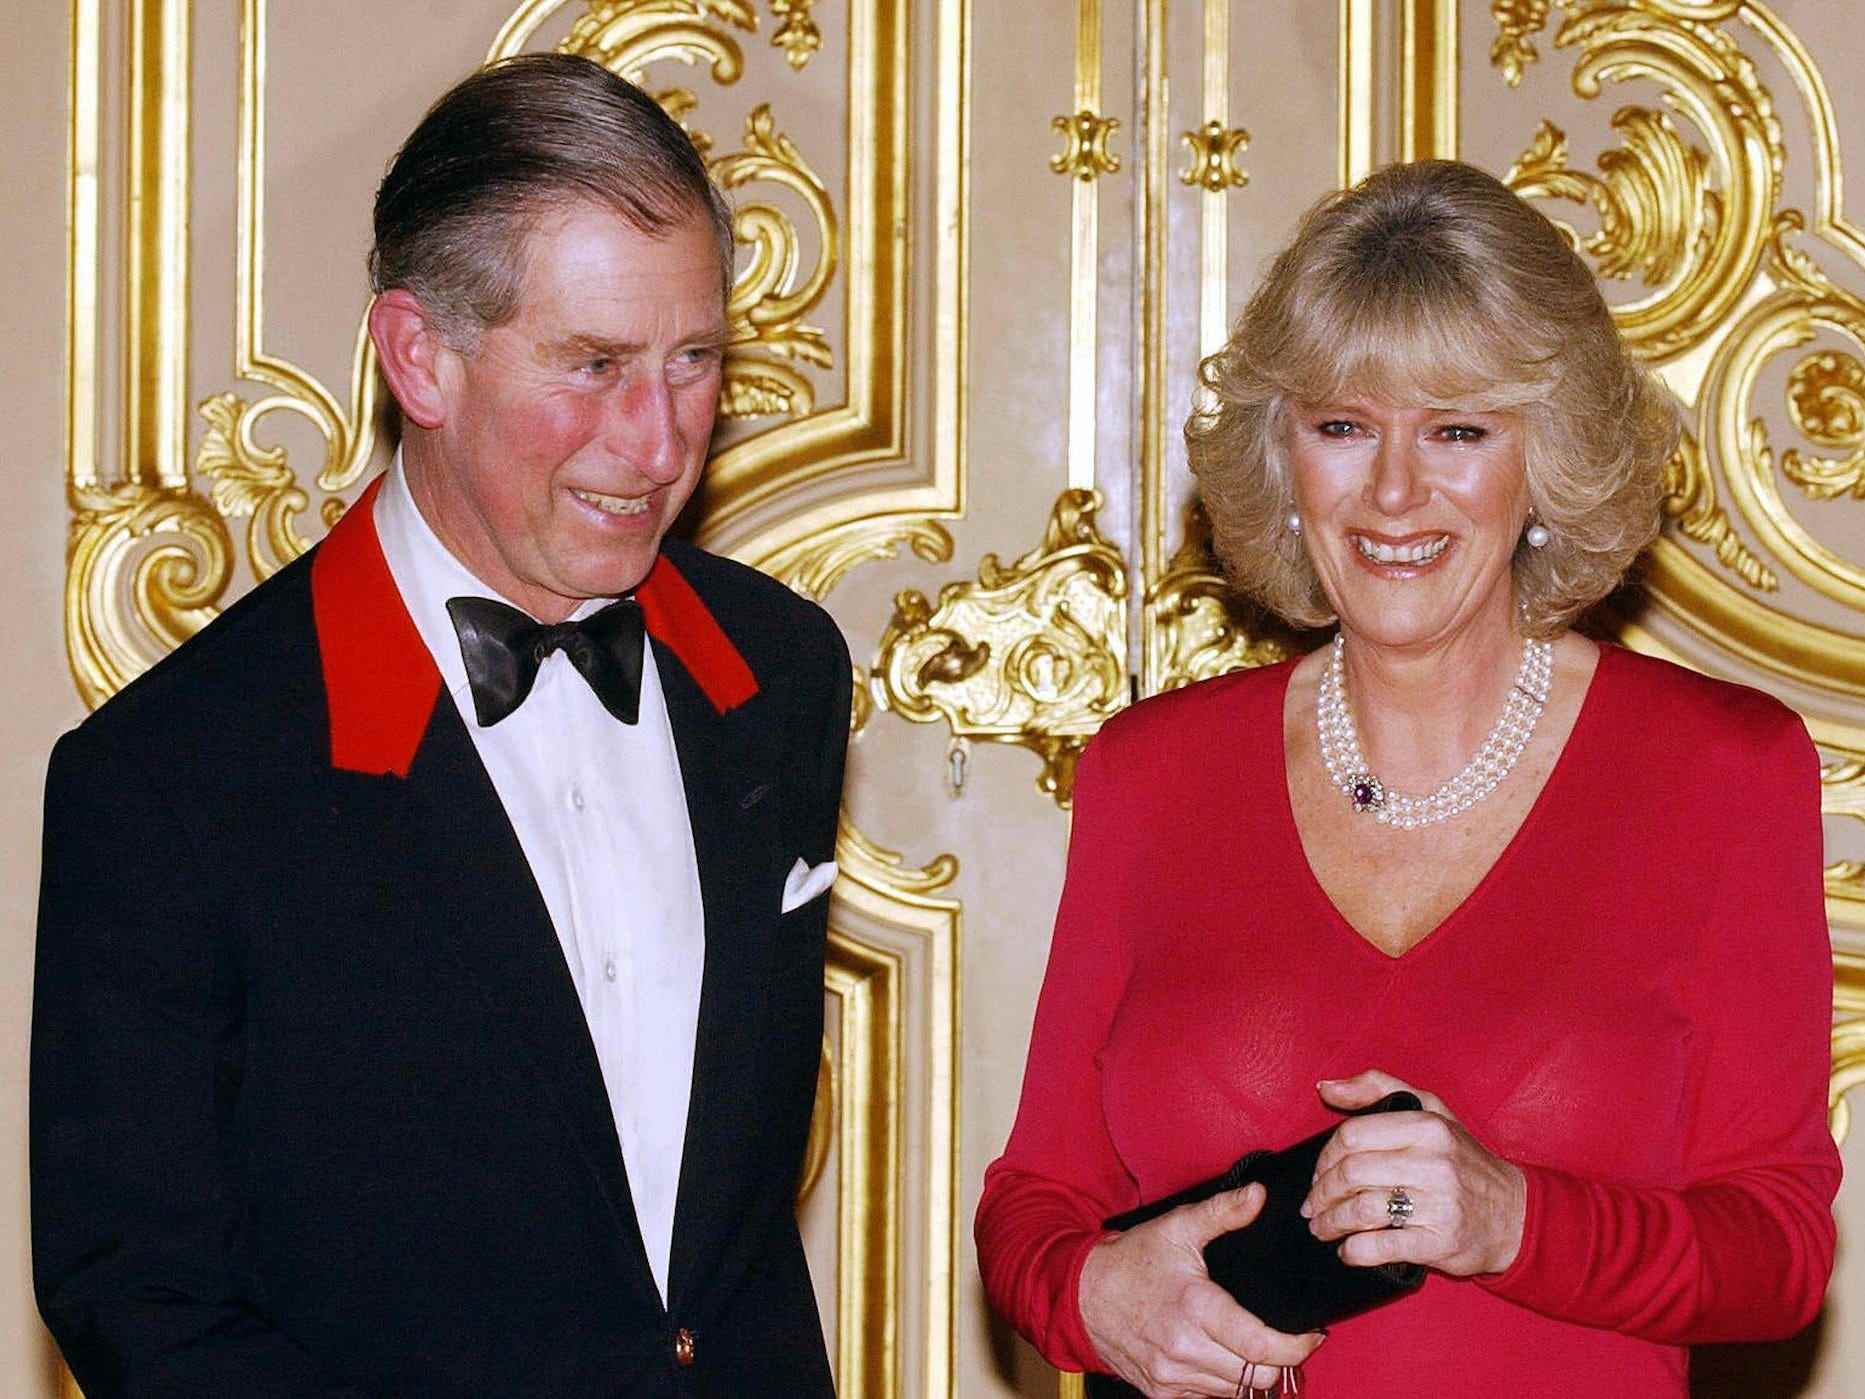 König Charles III und Camilla Parker Bowles auf Schloss Windsor im Jahr 2005.